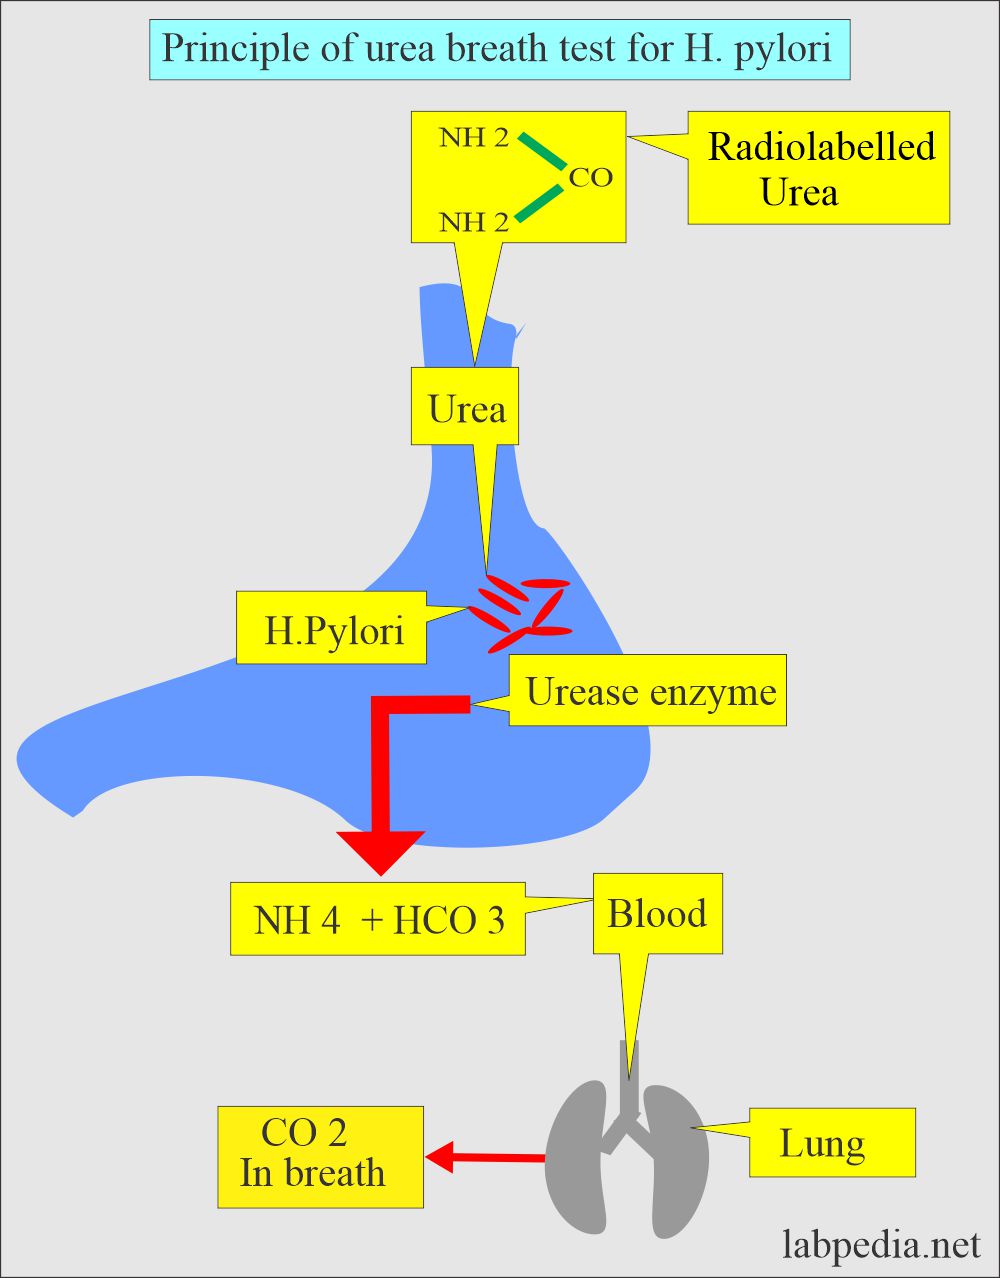 Principle of urea breath test for H. pylori